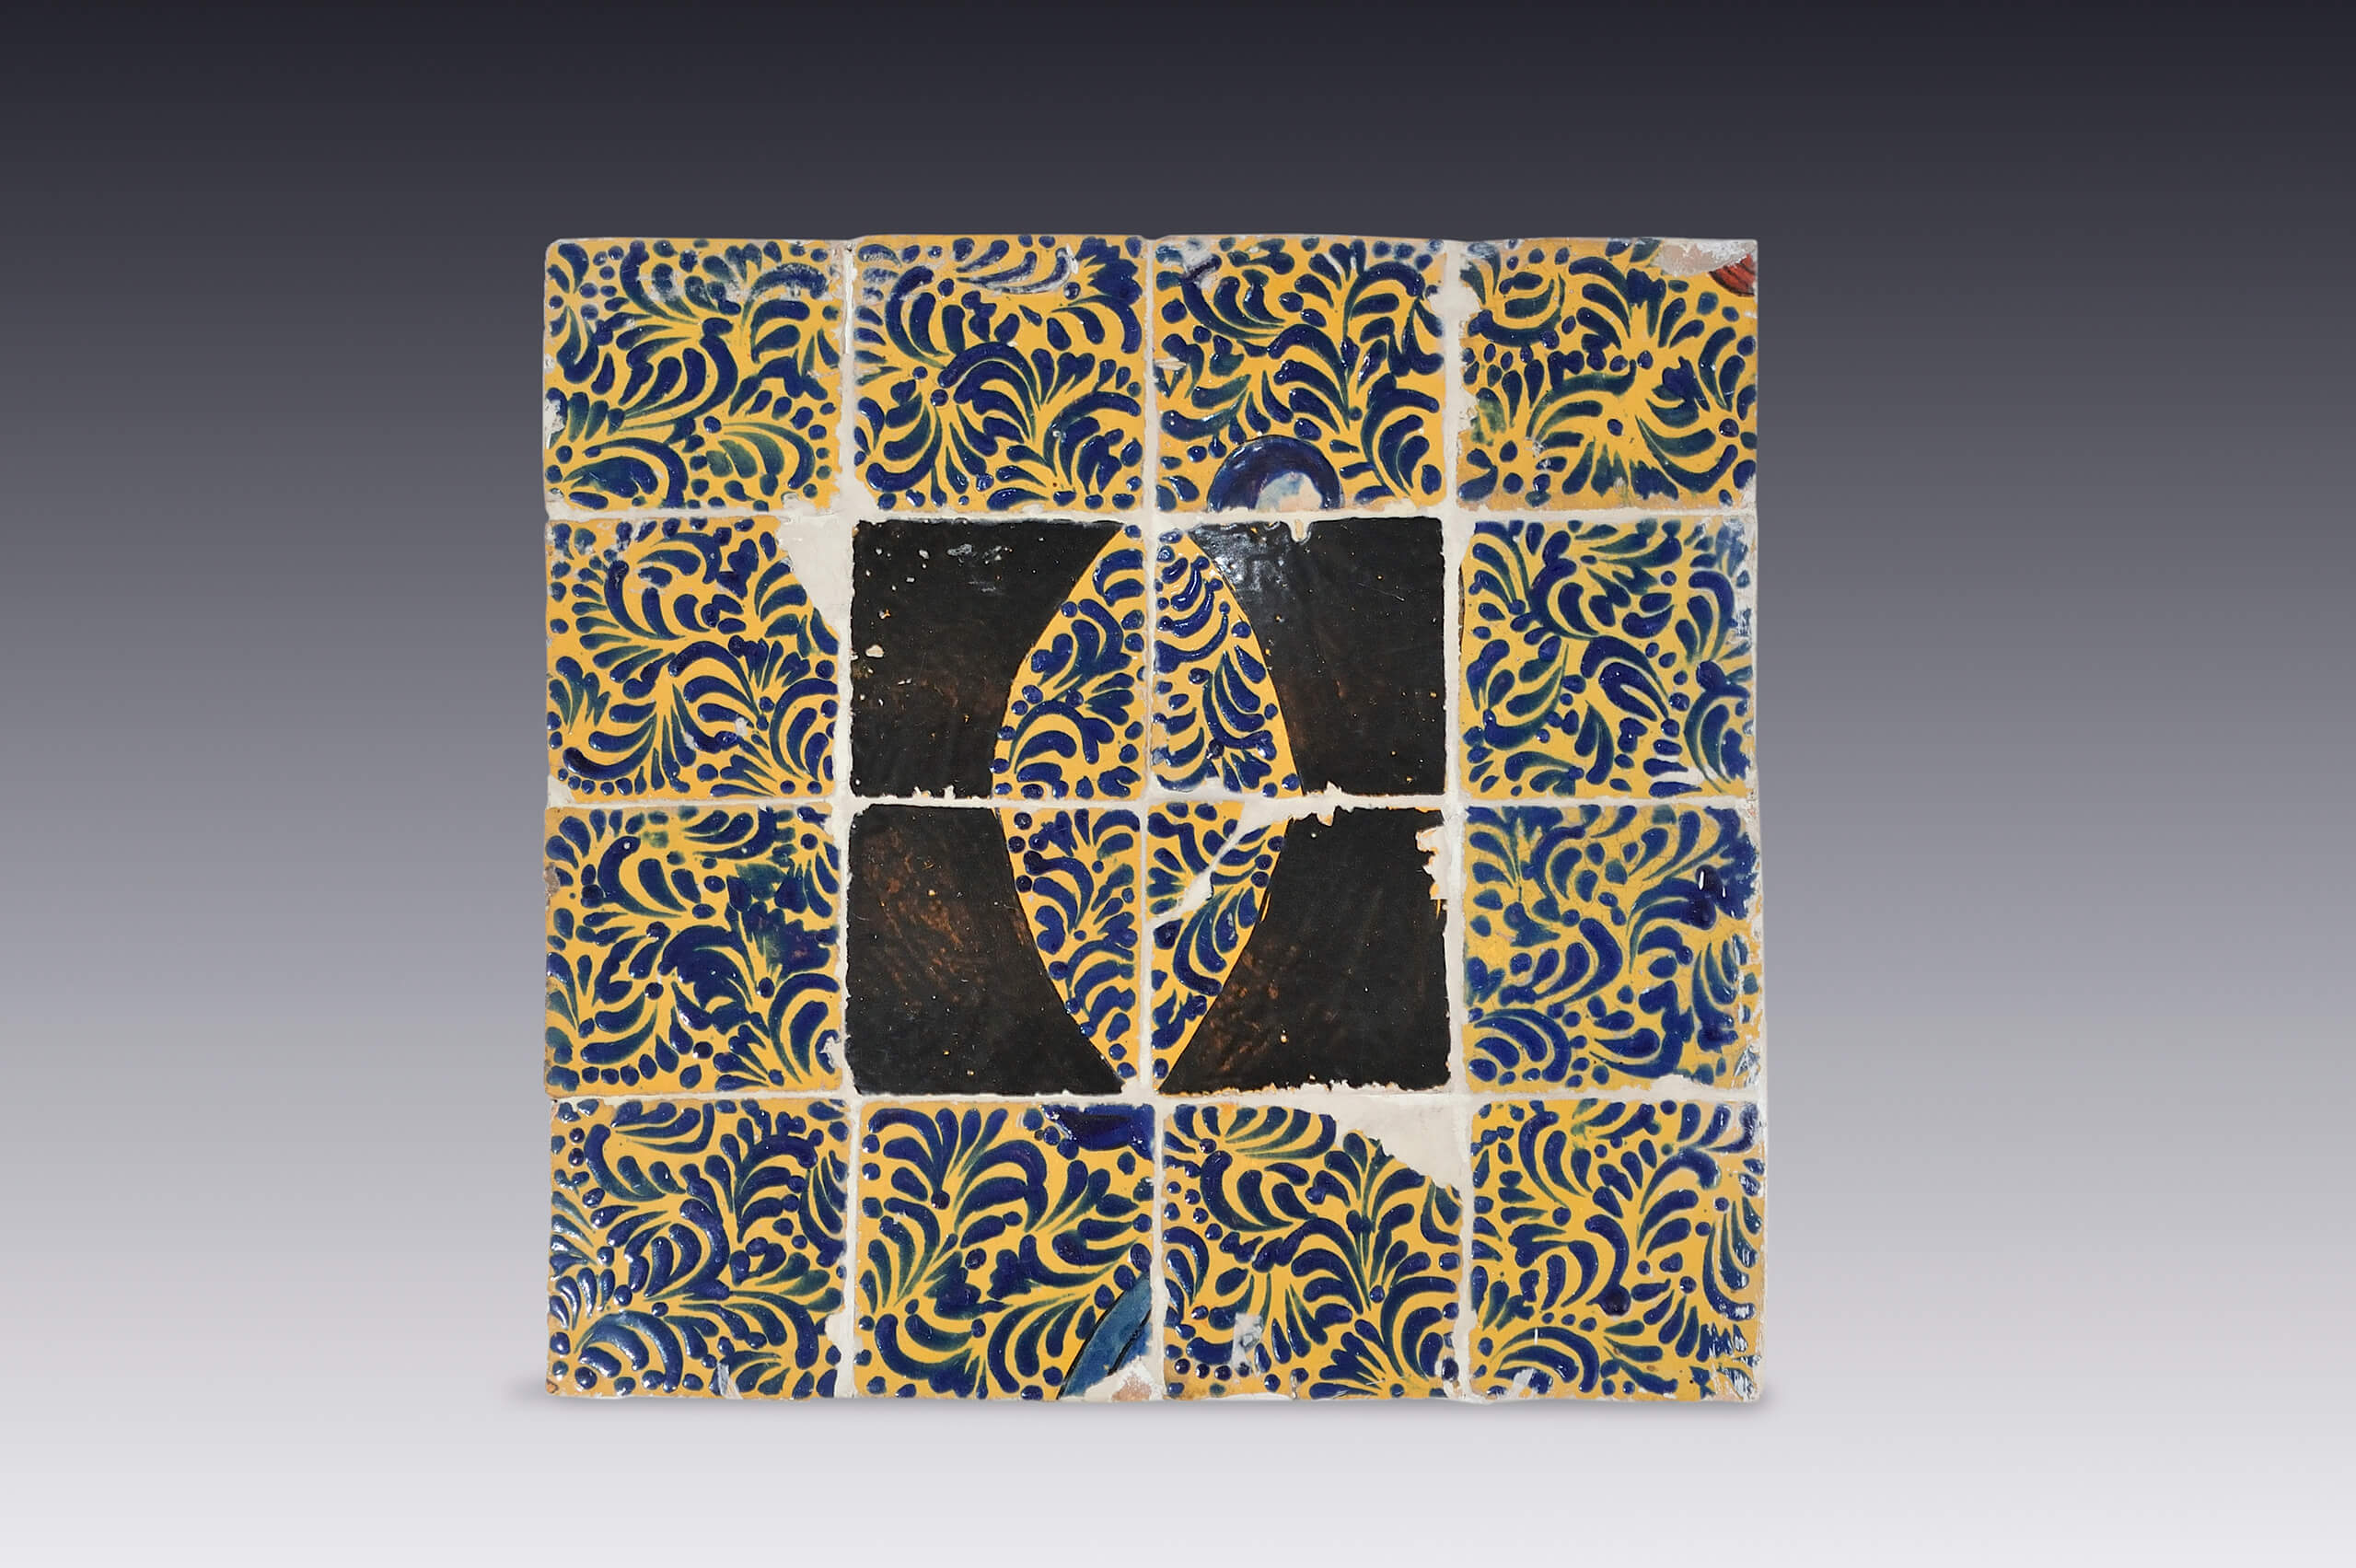 Panel de azulejos con óvalo plumeado | Salas de Arte Virreinal y Siglo XIX | Museo Amparo, Puebla